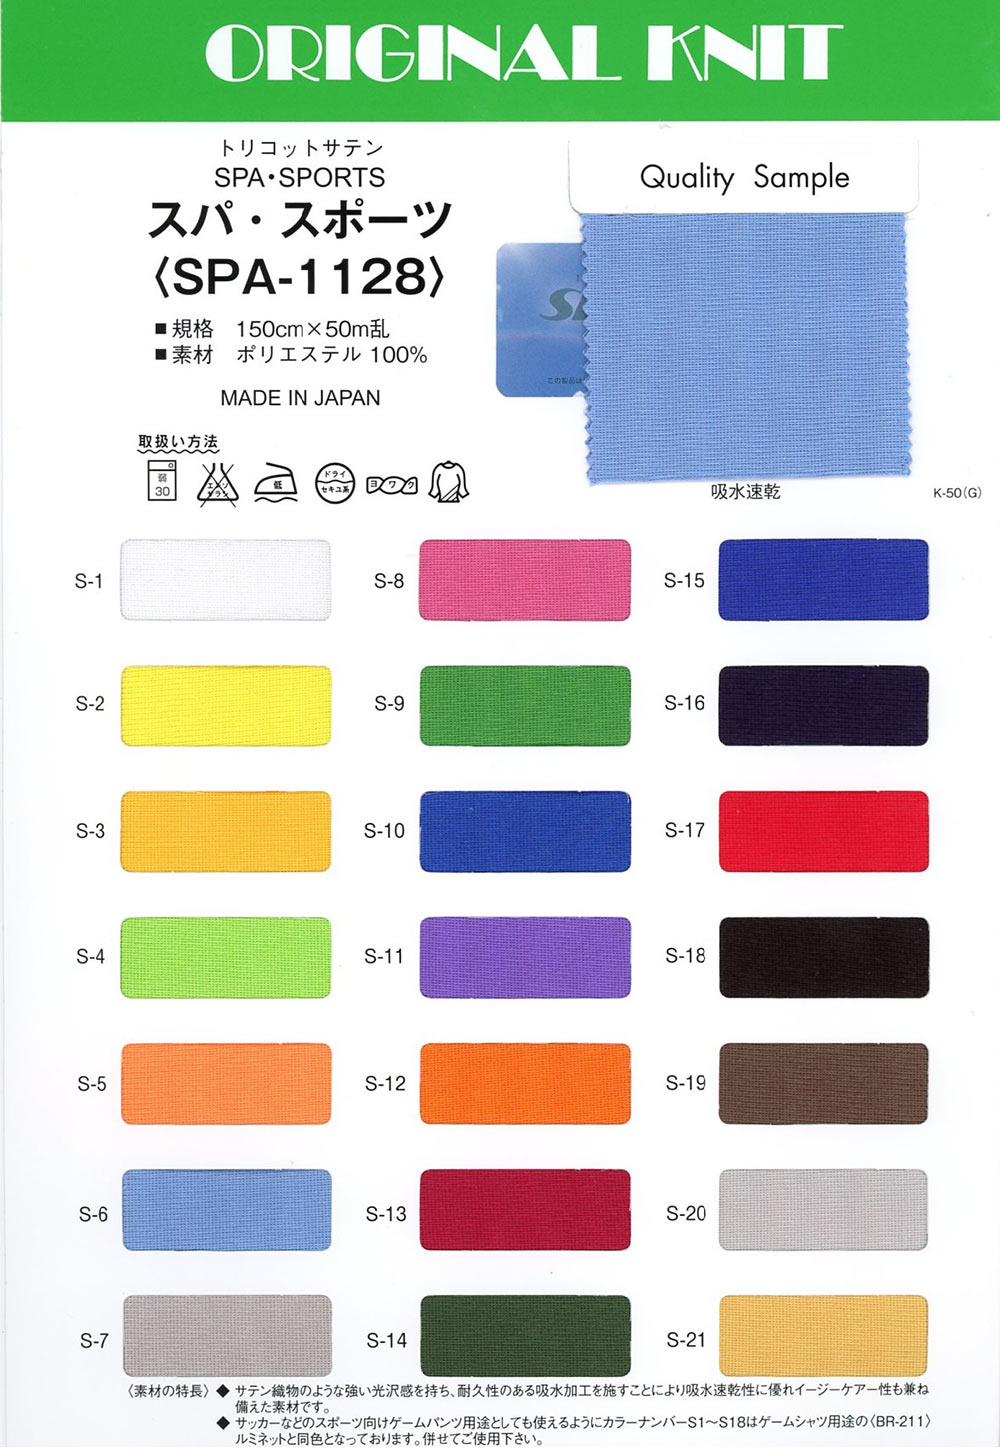 SPA-1128 Deportes De Spa[Fabrica Textil] Masuda